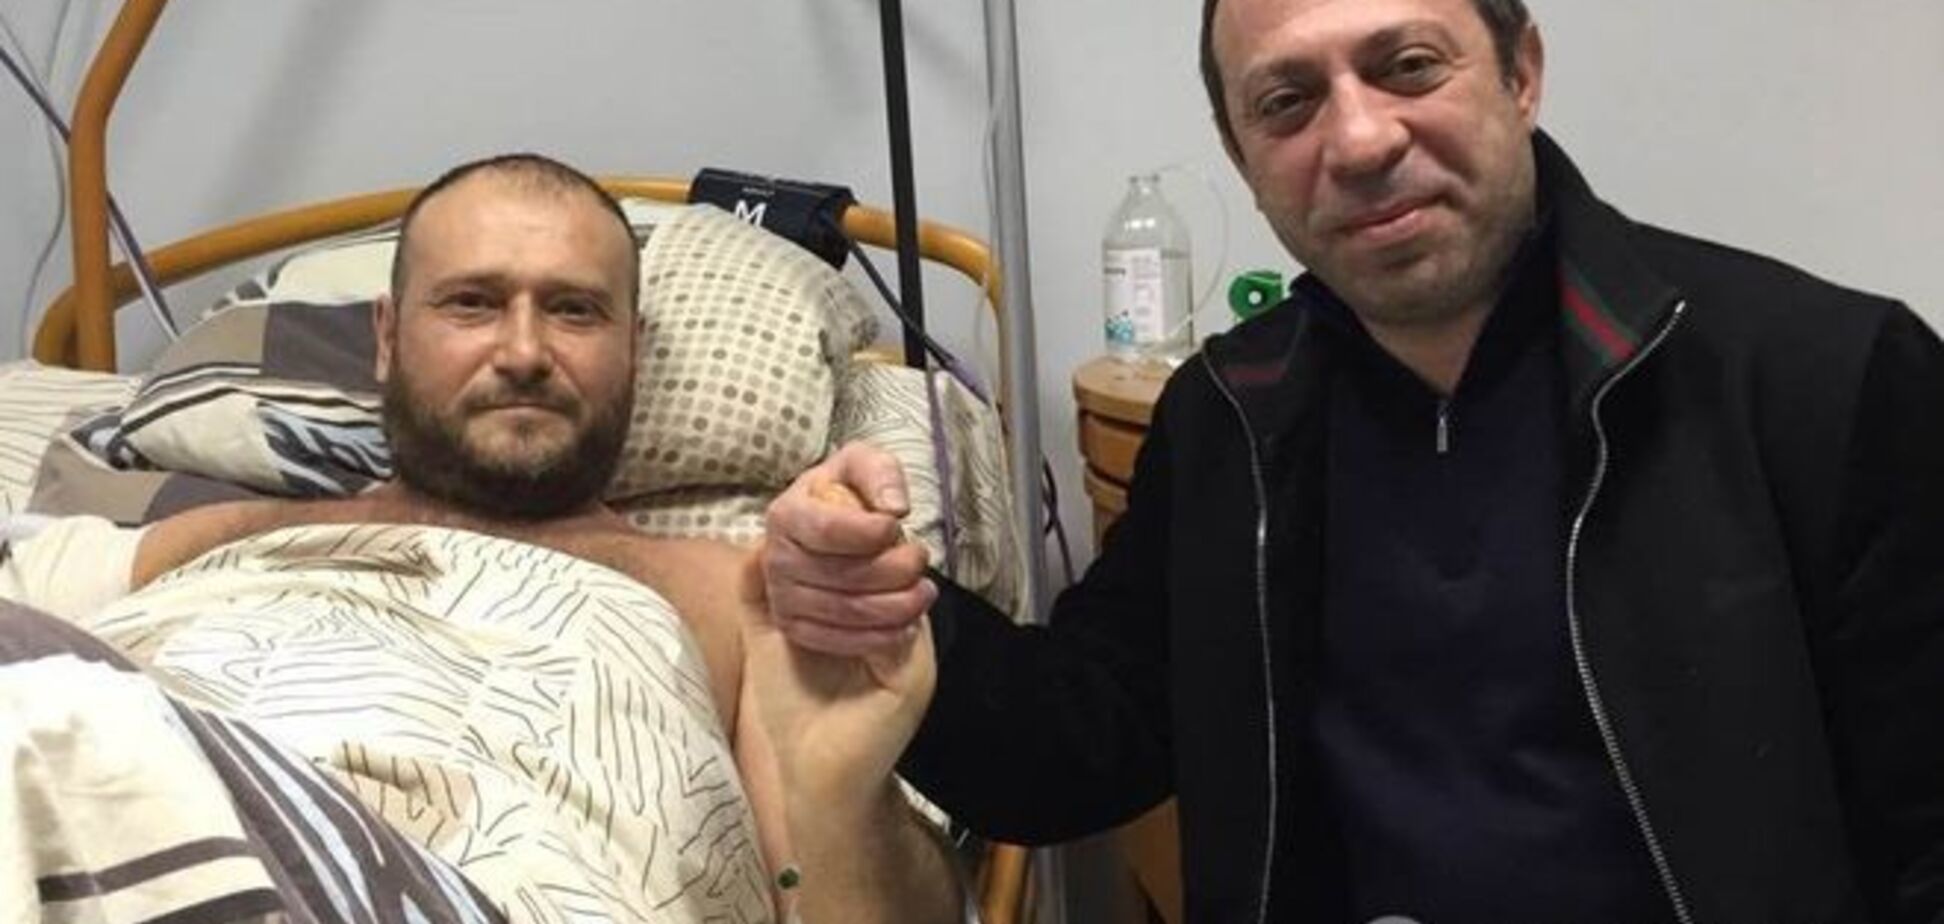 Яроша спасли израильские хирурги: подробности операции и фото из больницы